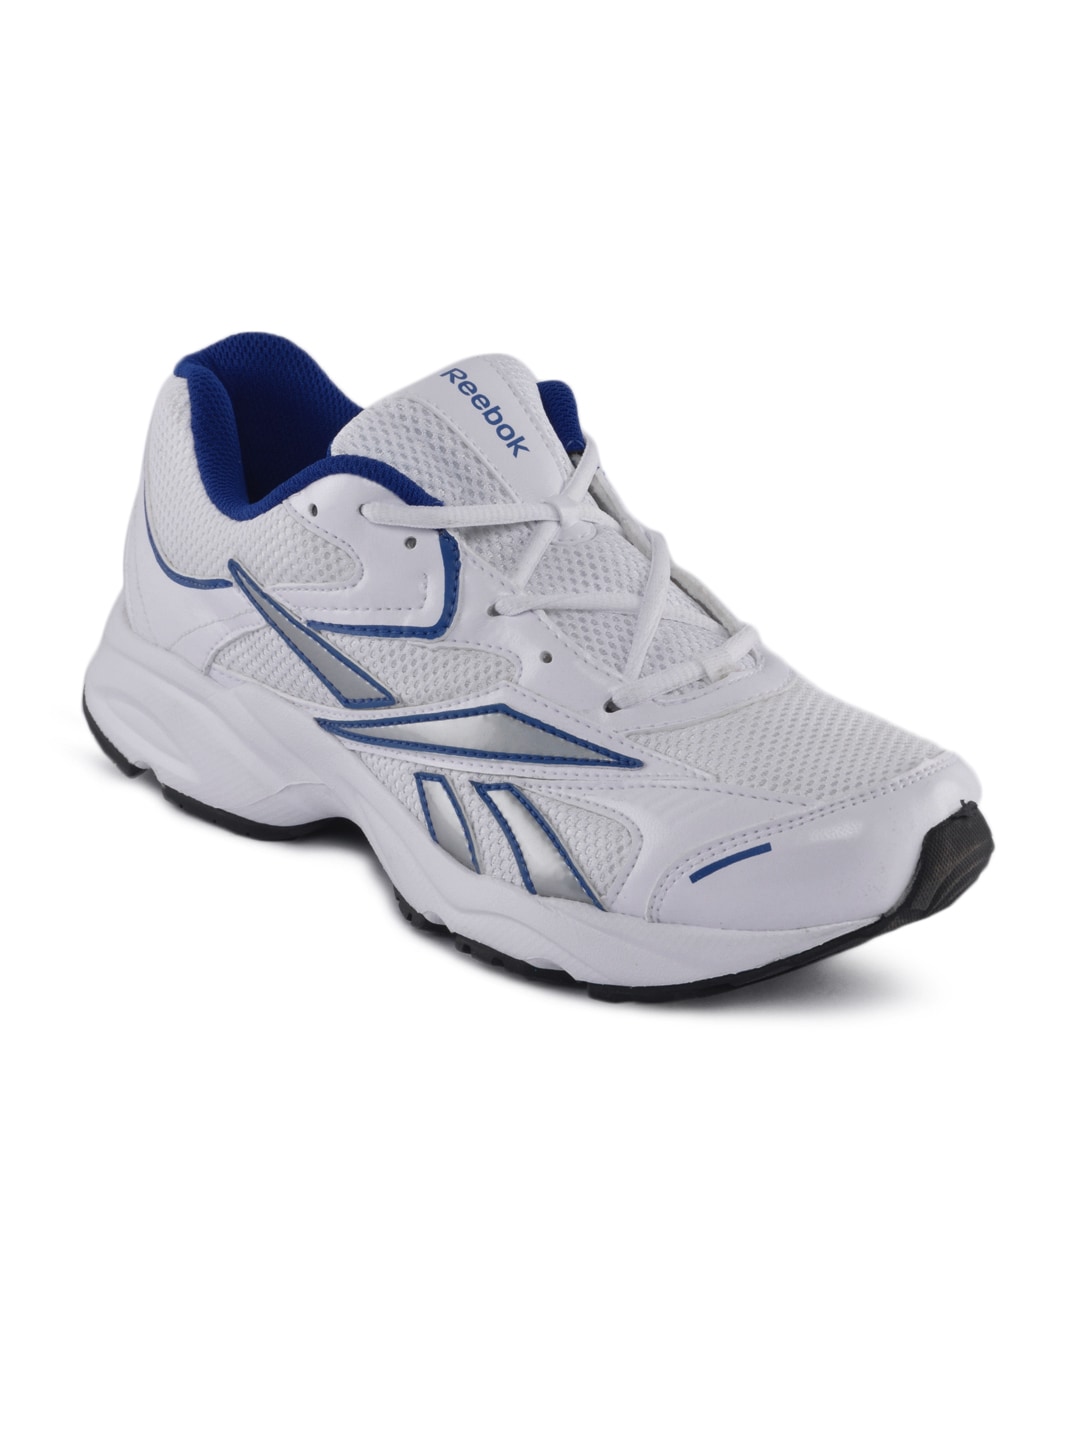 Reebok Men White Fusion Sports Shoes